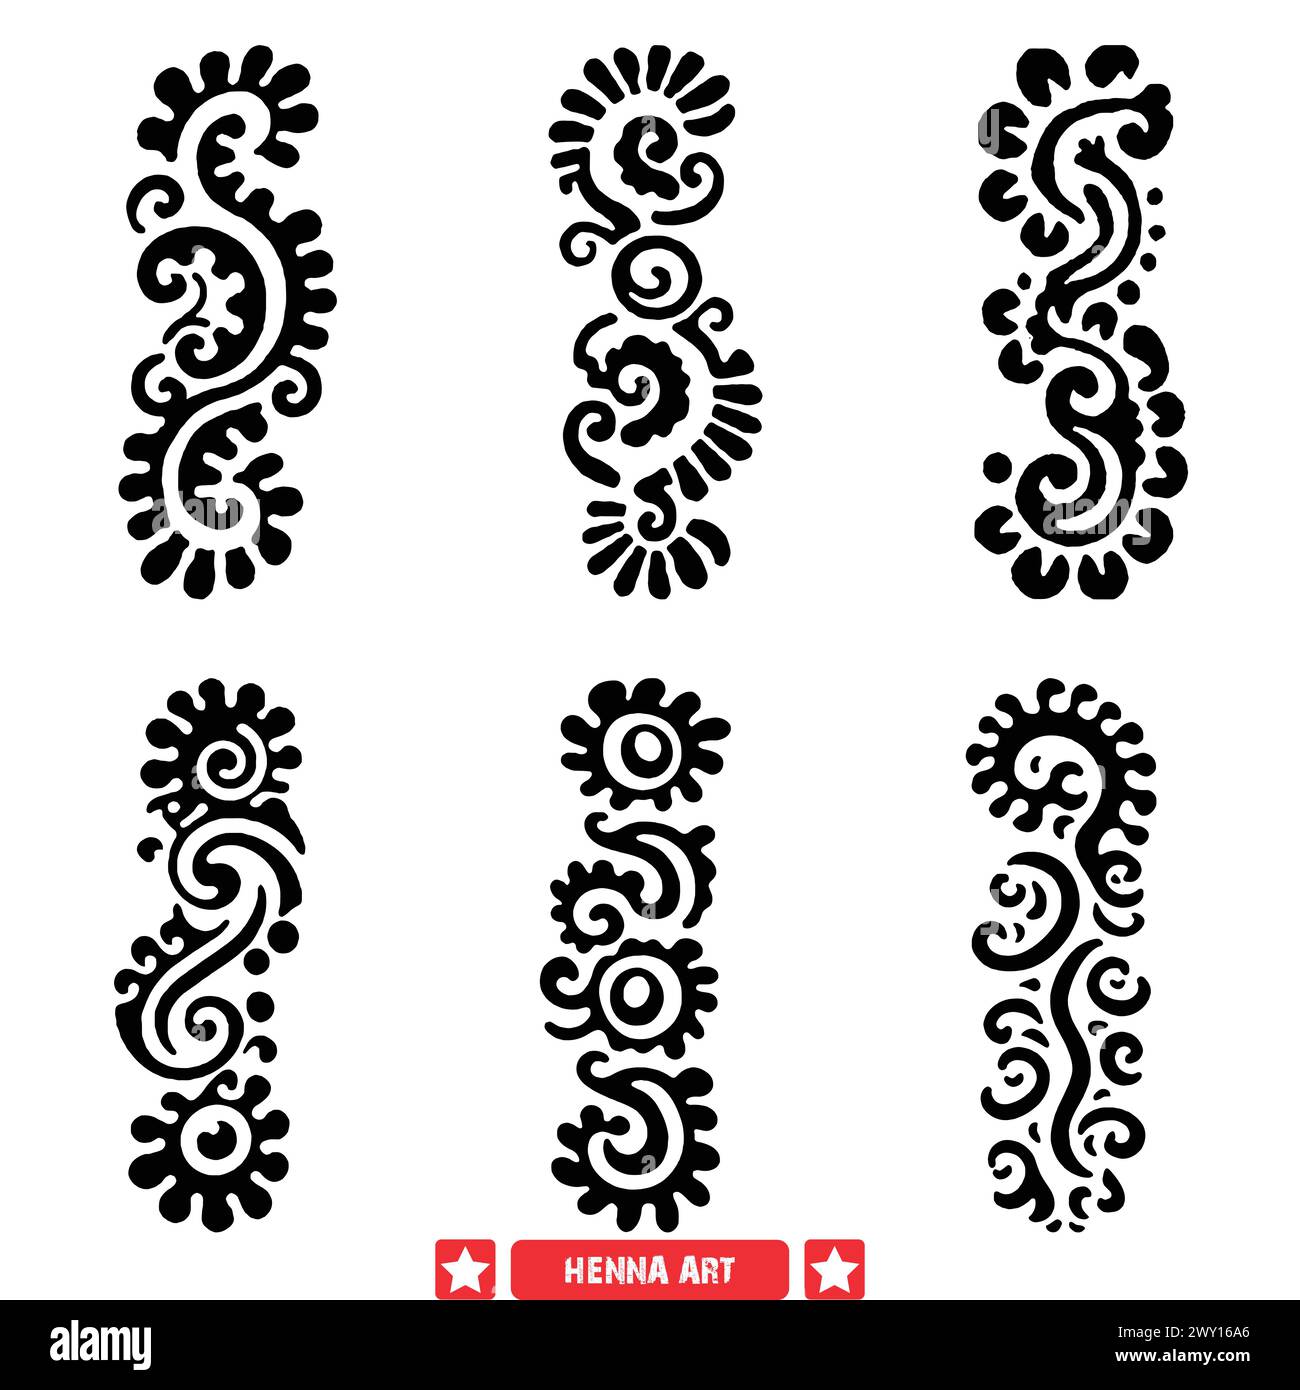 Elementi vettoriali ispirati all'henné simboli culturali per i supporti digitali e di stampa Illustrazione Vettoriale